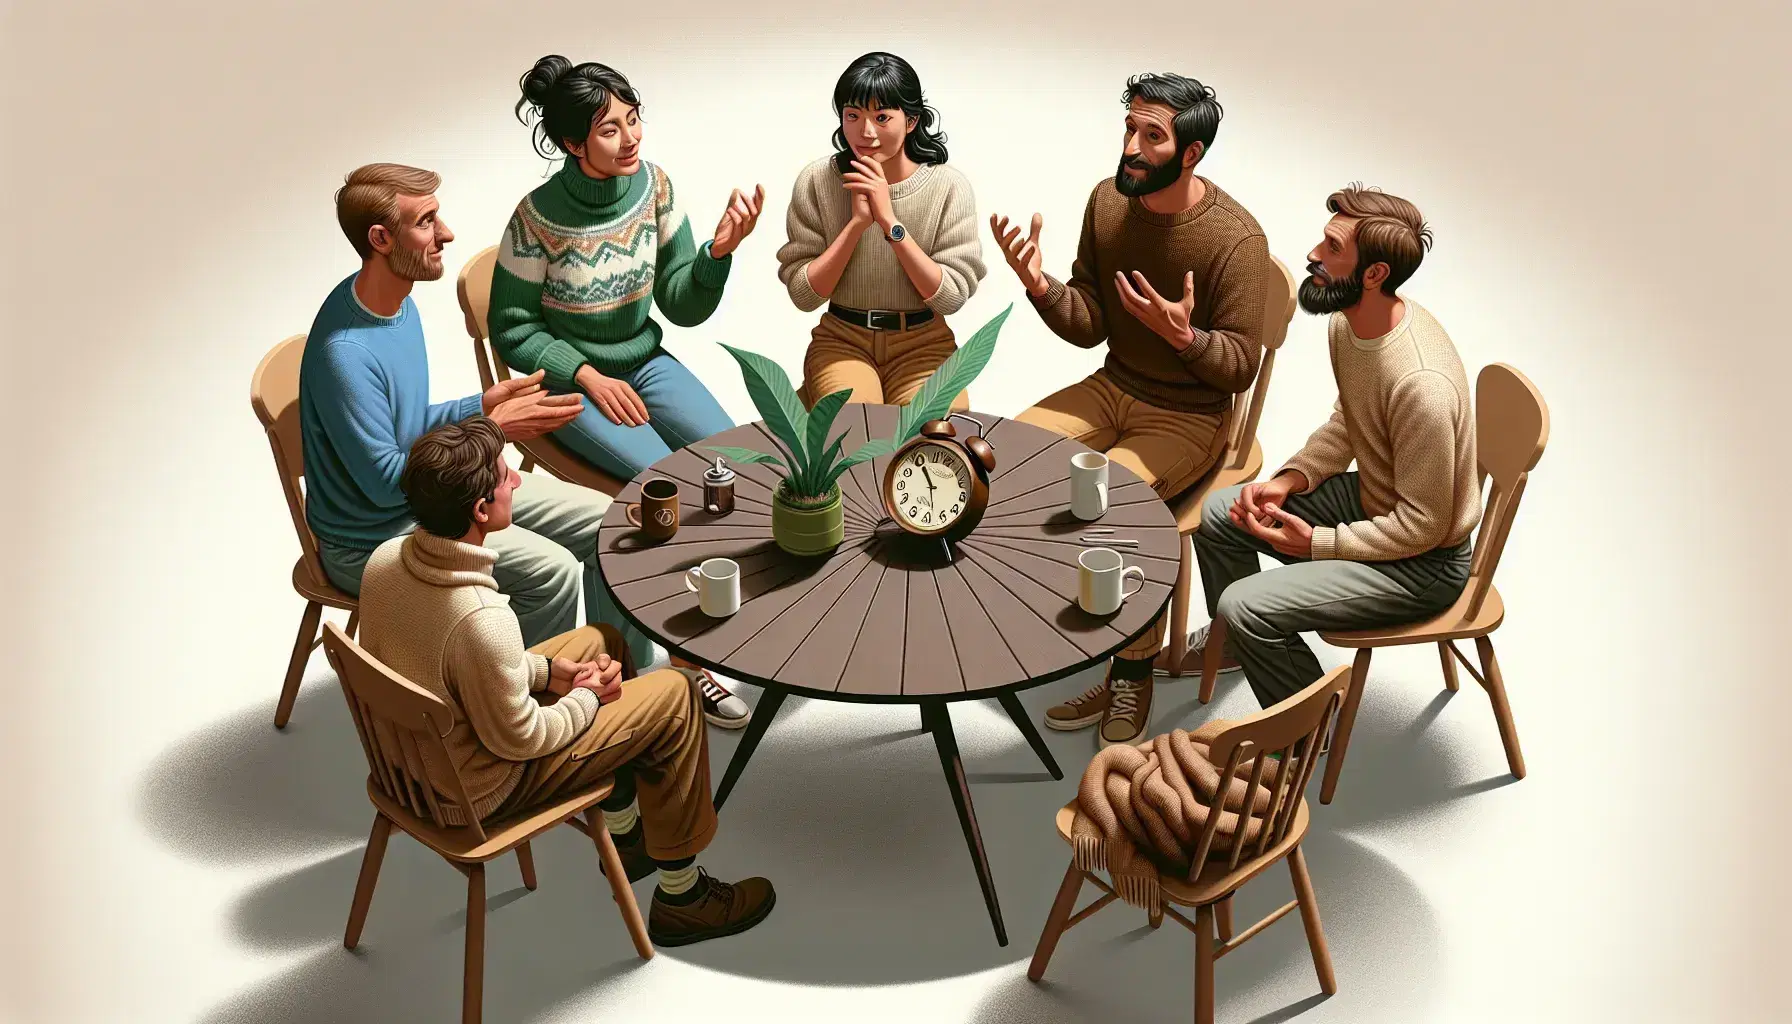 Gruppo di cinque persone in conversazione sedute in cerchio attorno a un tavolo con pianta, tazza e orologio, esprimendo vari gesti e emozioni.